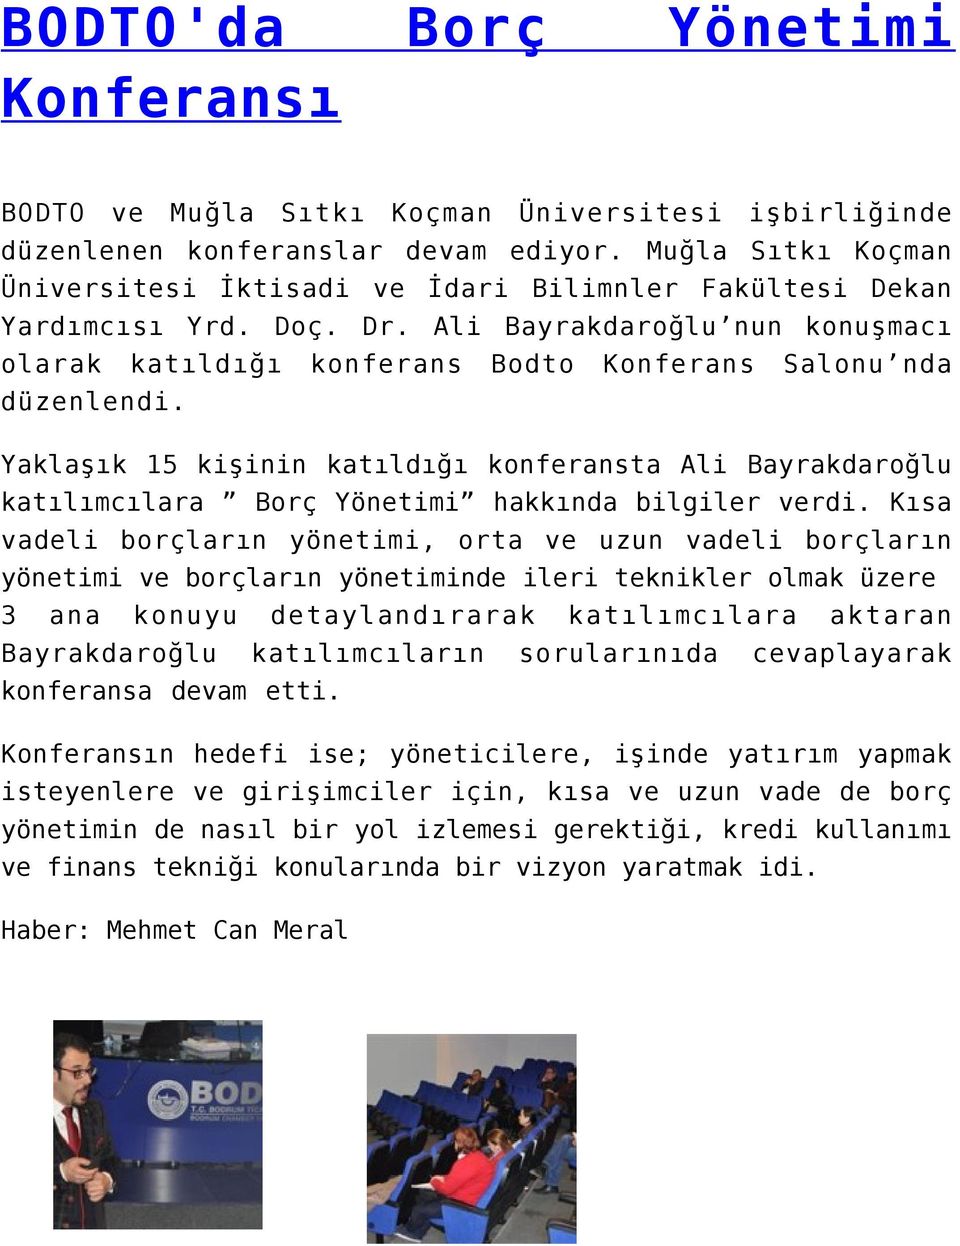 Yaklaşık 15 kişinin katıldığı konferansta Ali Bayrakdaroğlu katılımcılara Borç Yönetimi hakkında bilgiler verdi.